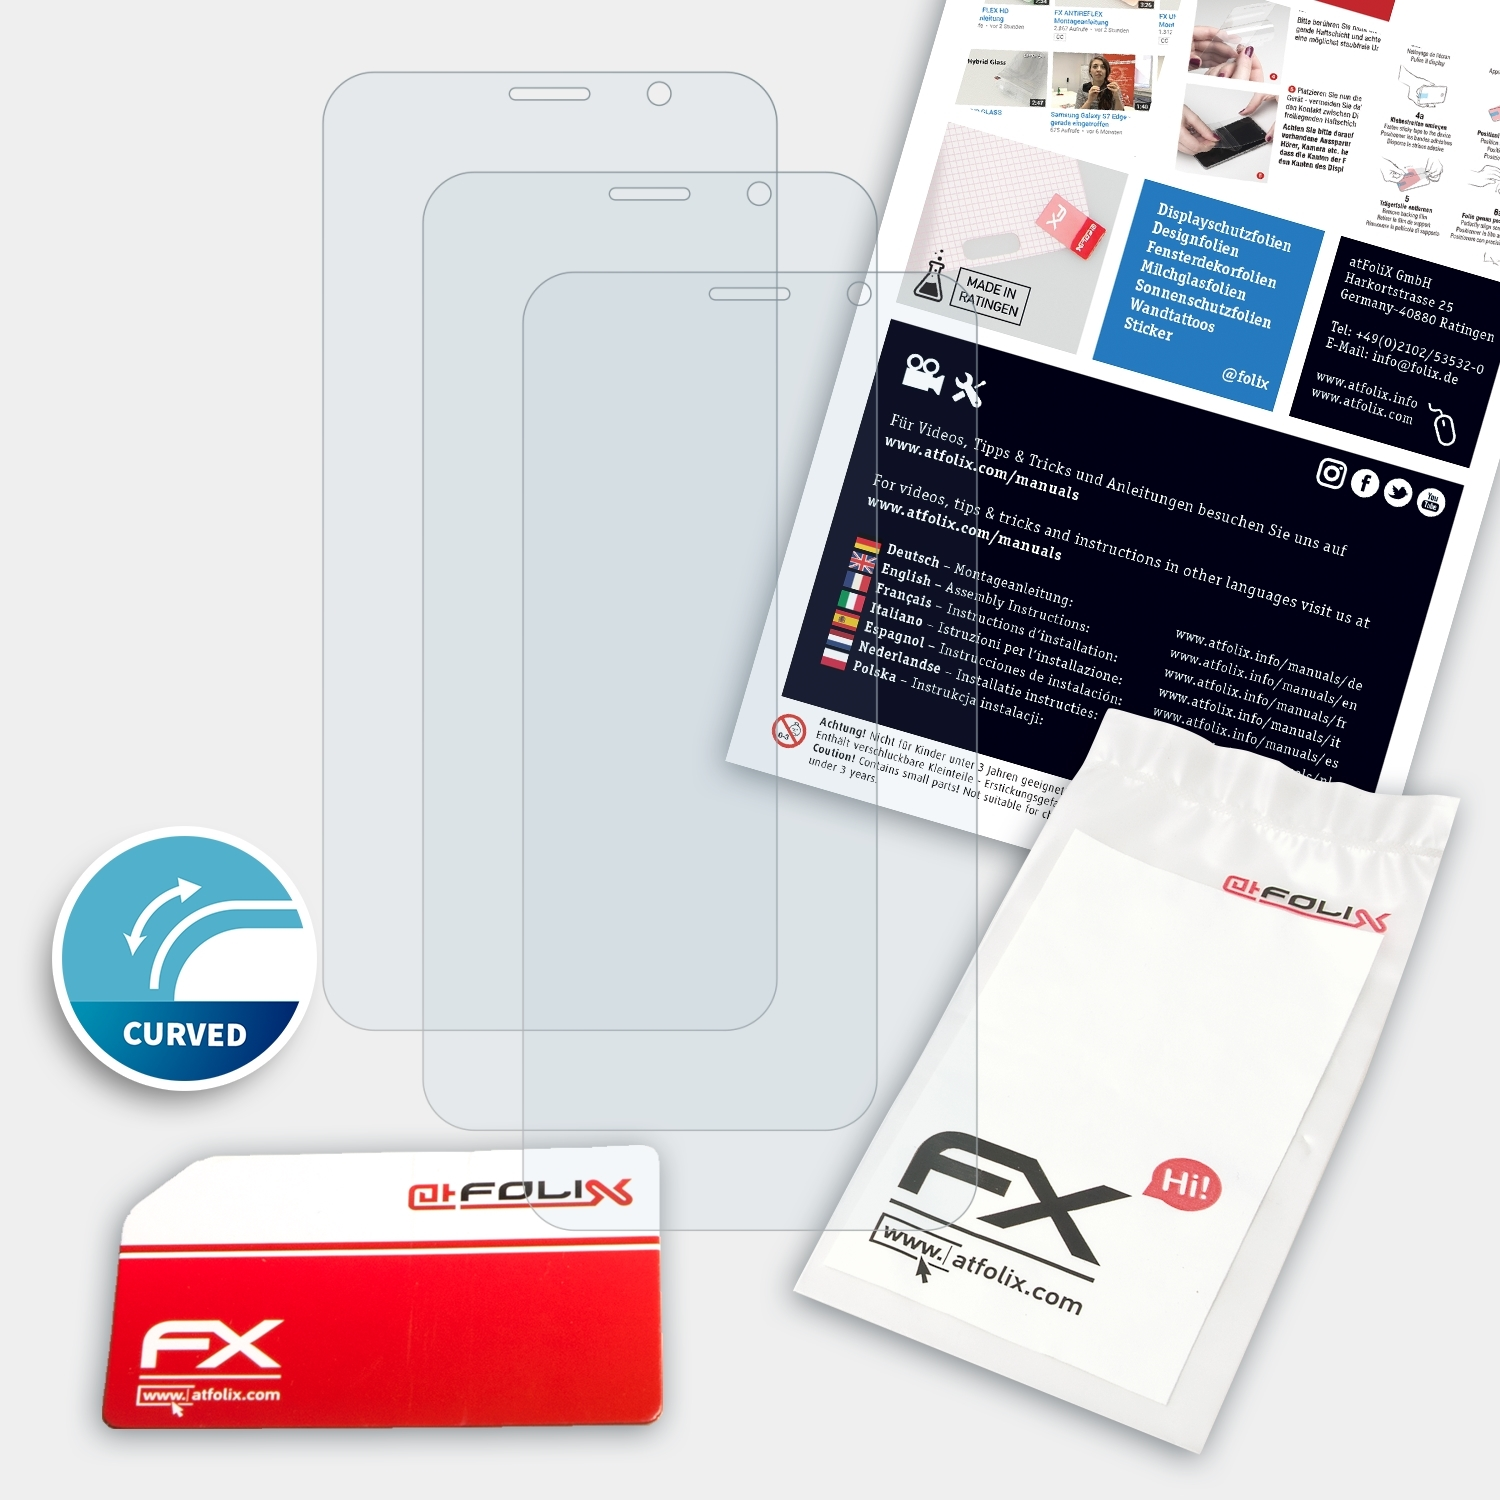 ATFOLIX 3x Huawei Displayschutz(für Mate FX-ActiFleX RS)